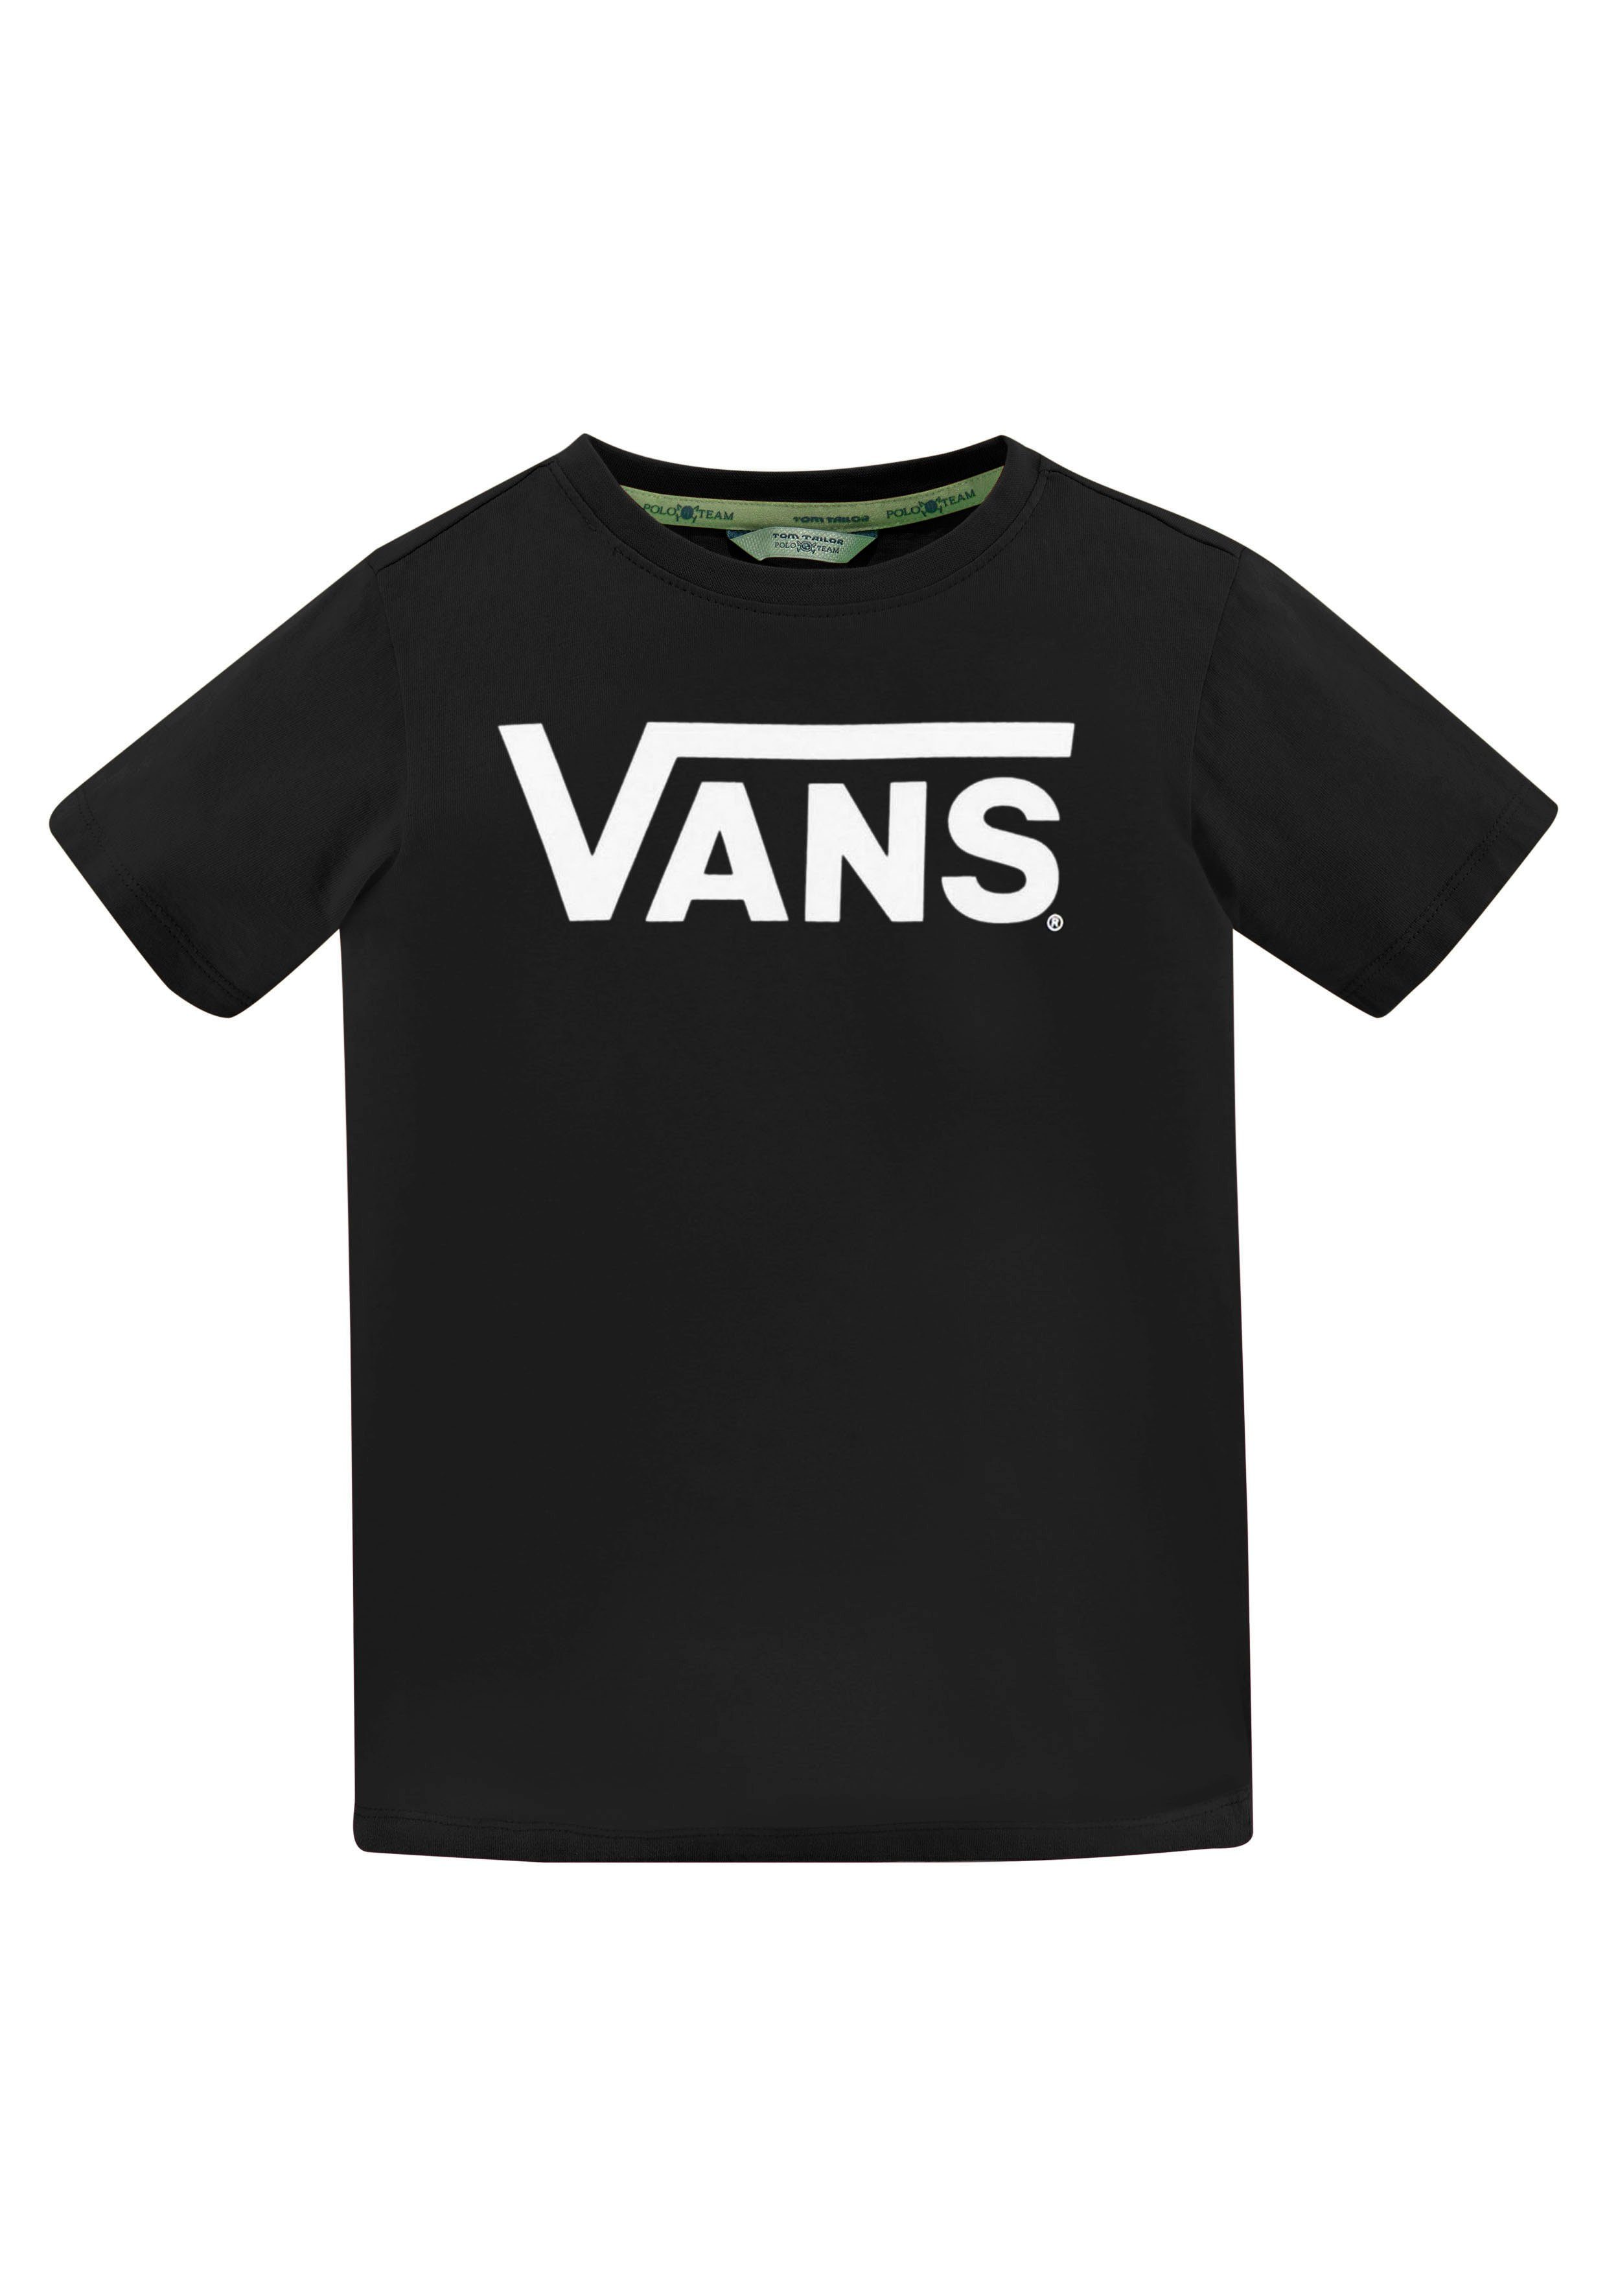 Vans T-Shirt VANS CLASSIC KIDS schwarz